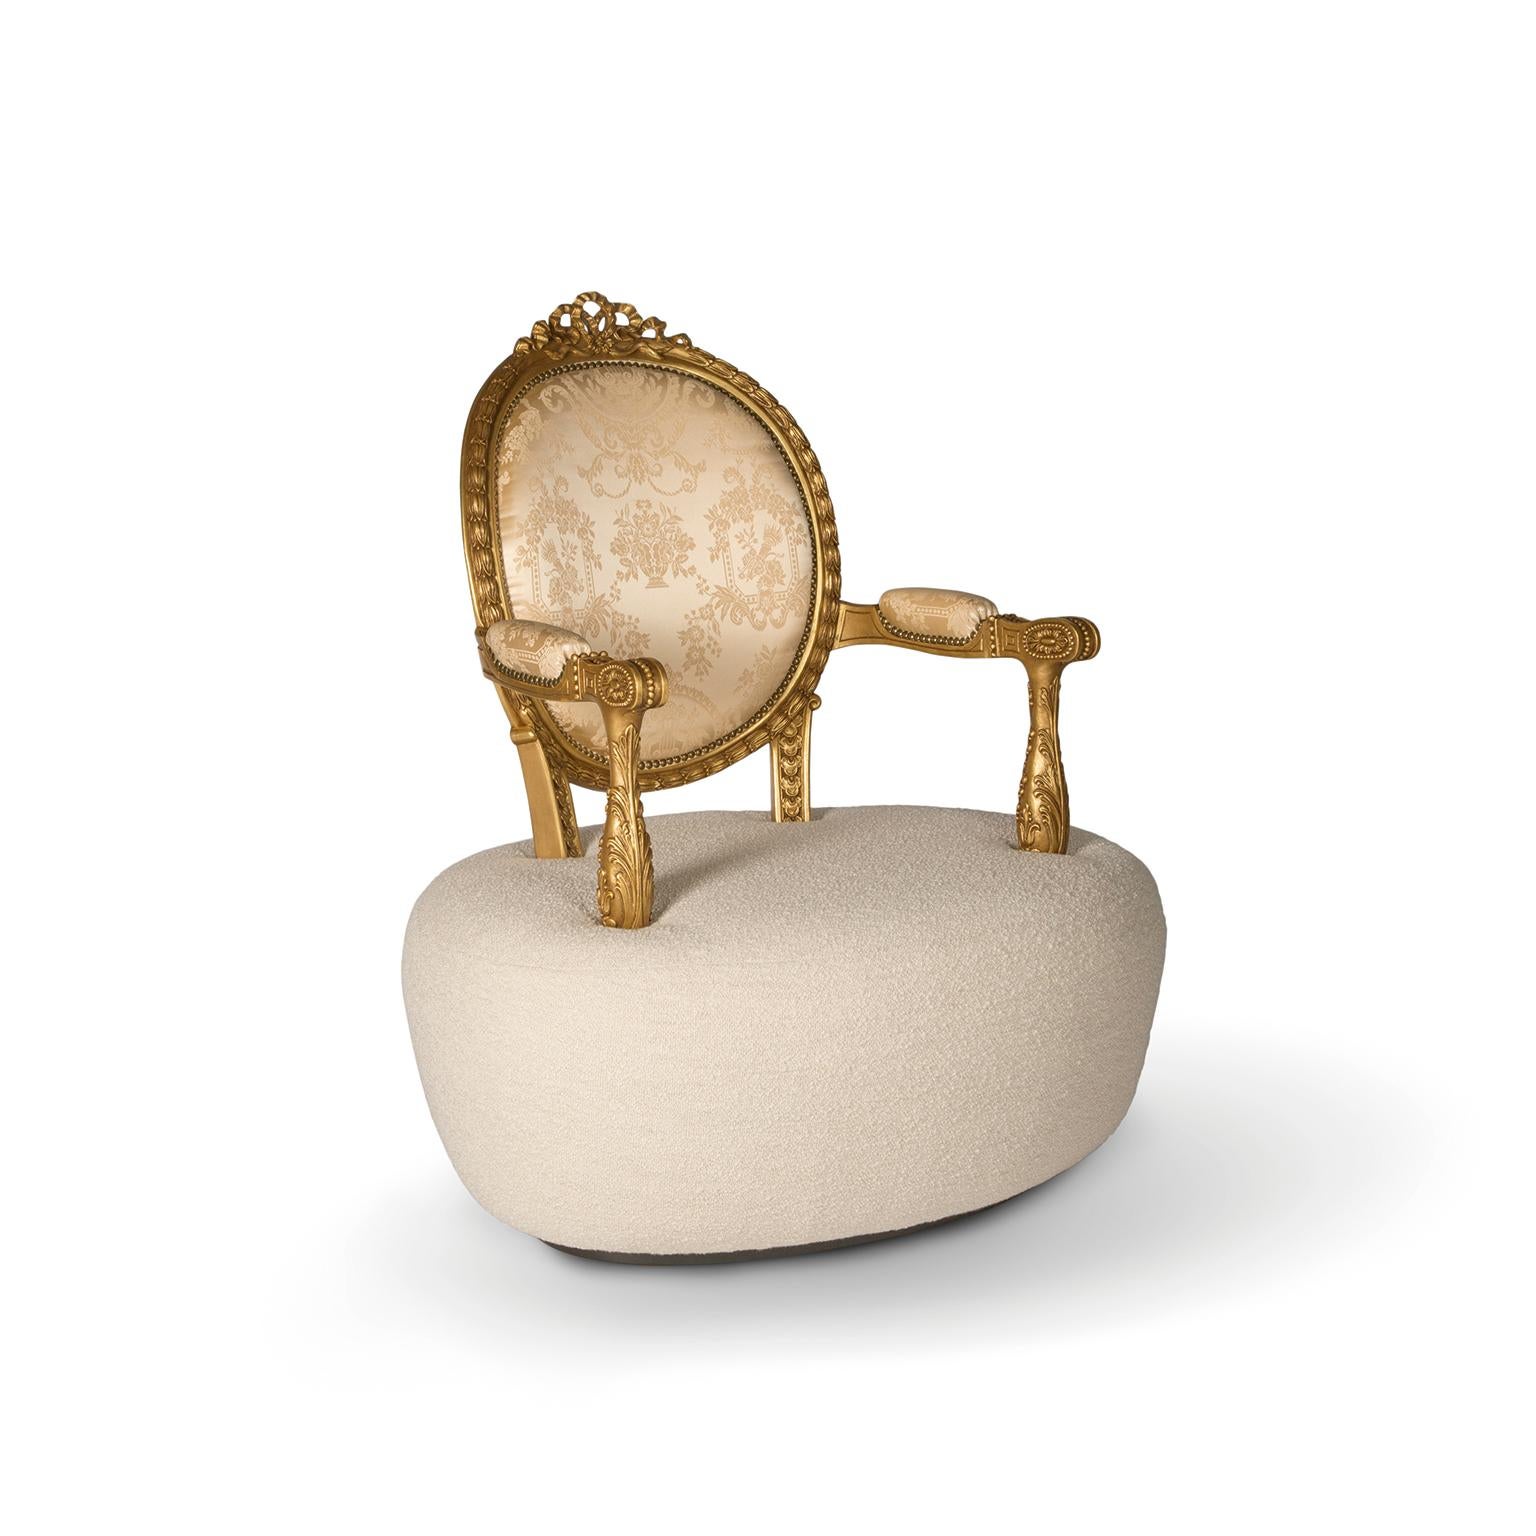 Inspiration :
C'est l'un des fauteuils les plus haut de gamme de la collection Bessa. Digne de la grandeur d'un empire, il est fabriqué avec les tissus les plus haut de gamme du marché, admirablement sculpté à la main et fini à la feuille d'or 22k